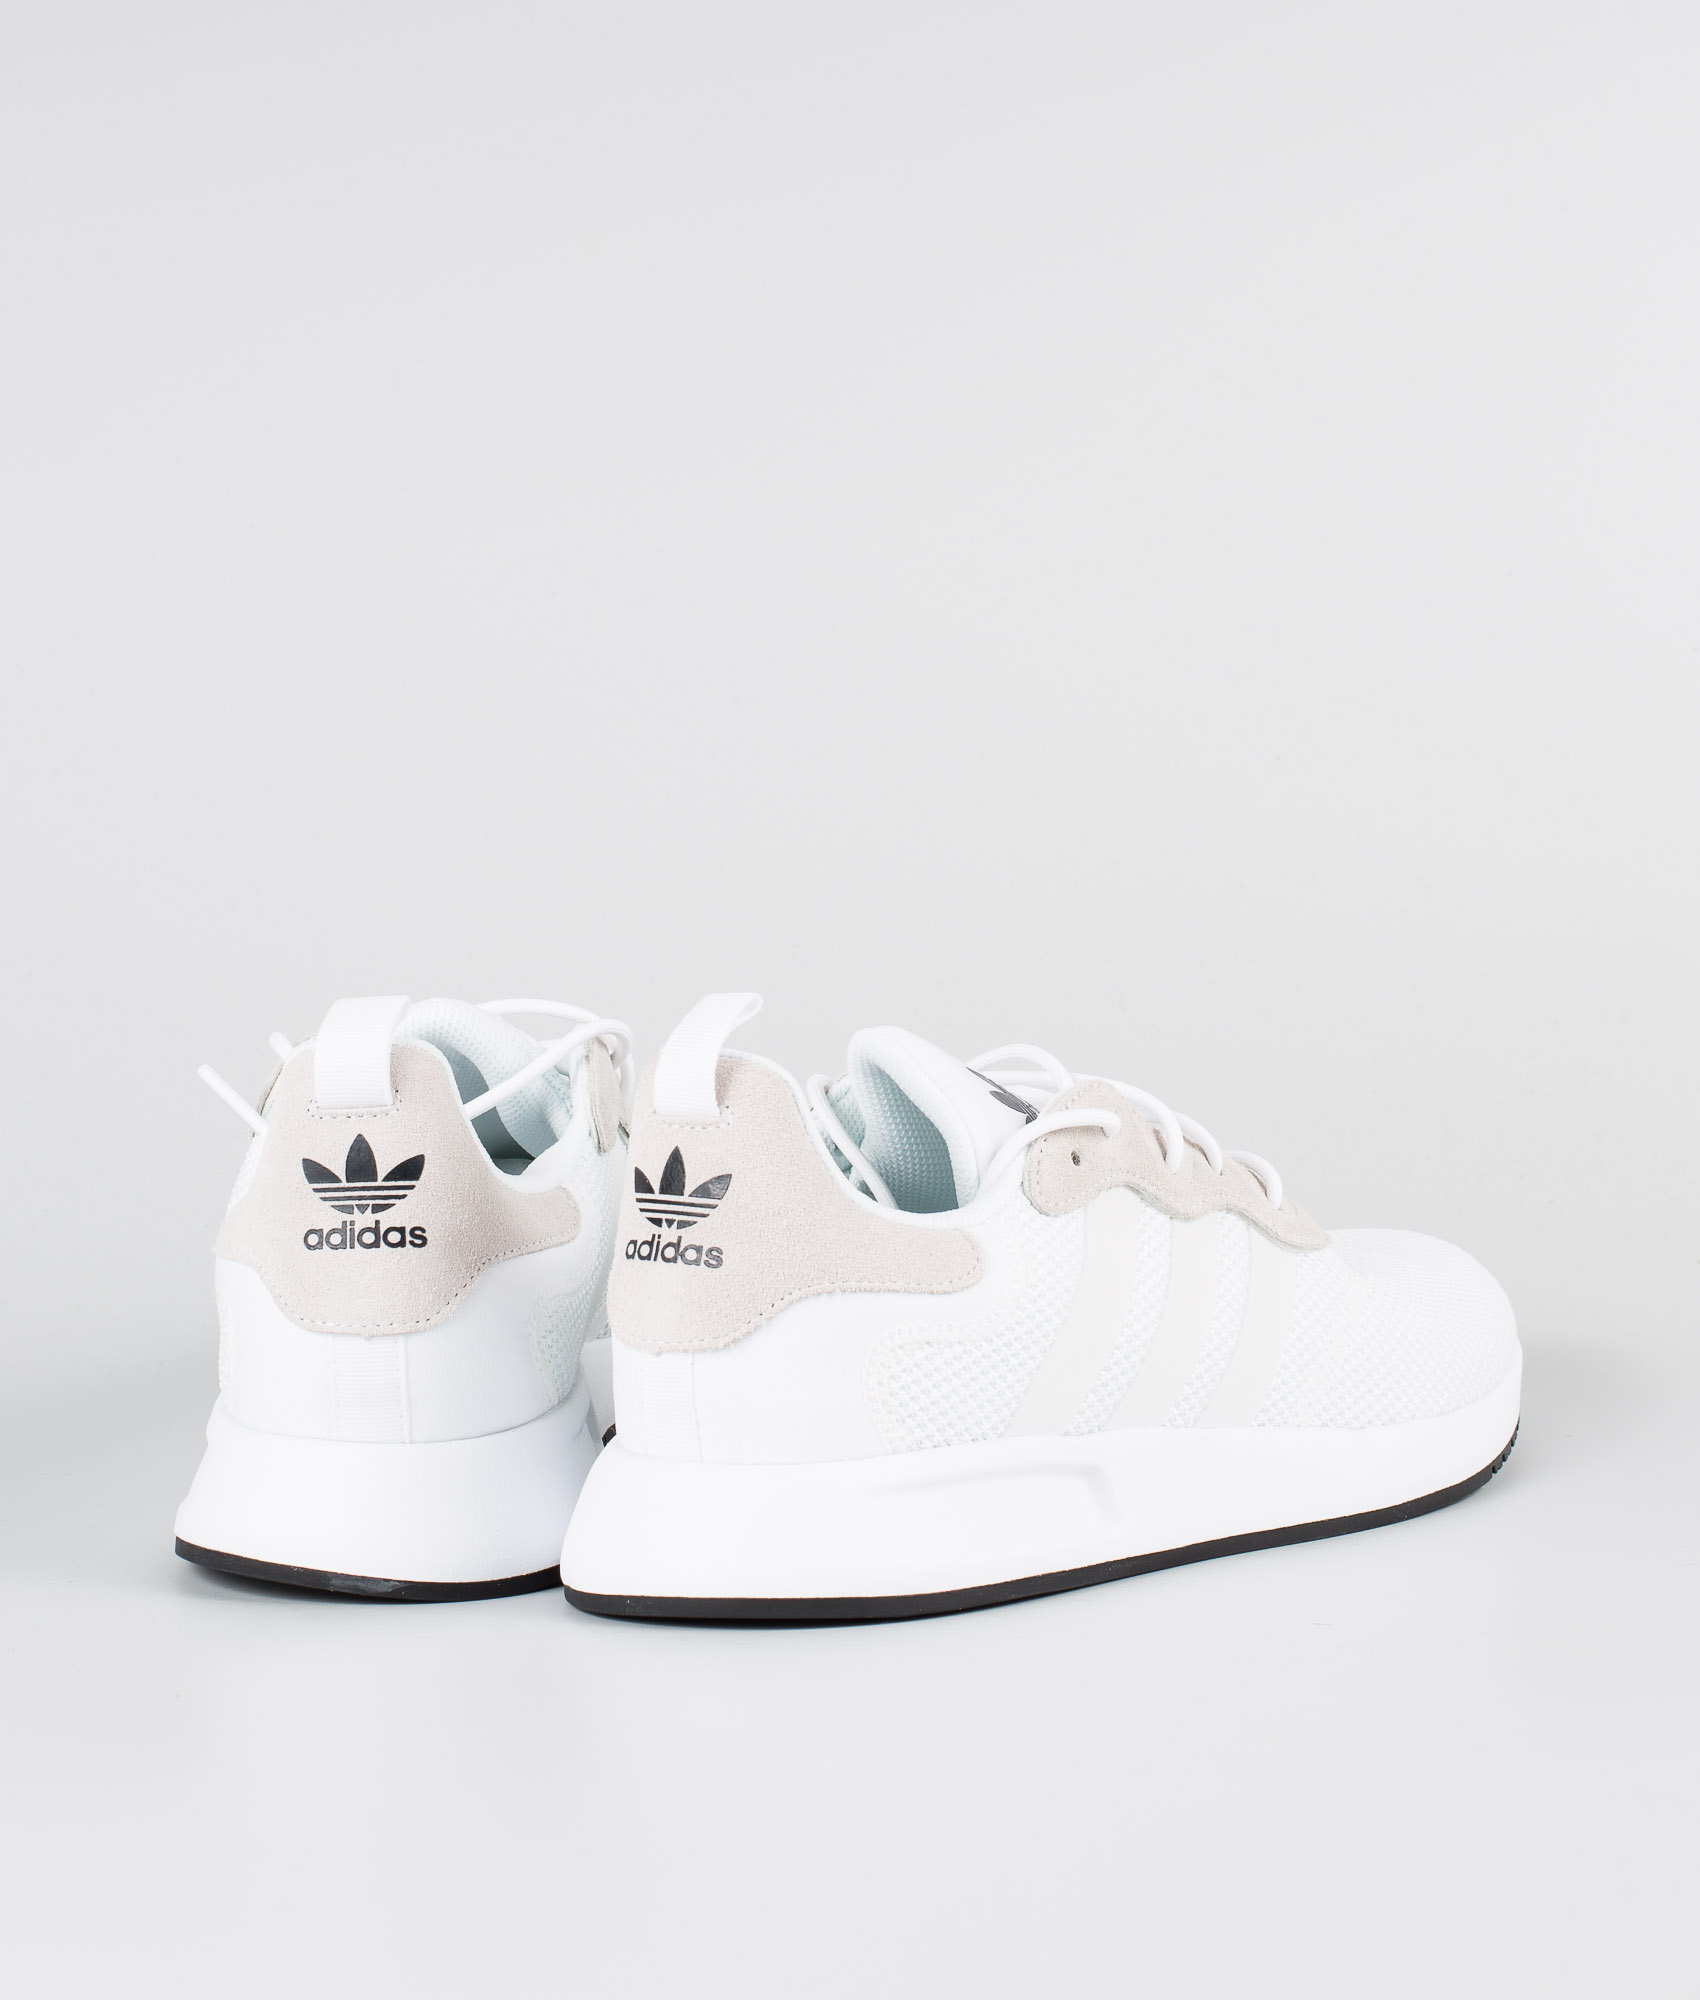 x_plr shoes white